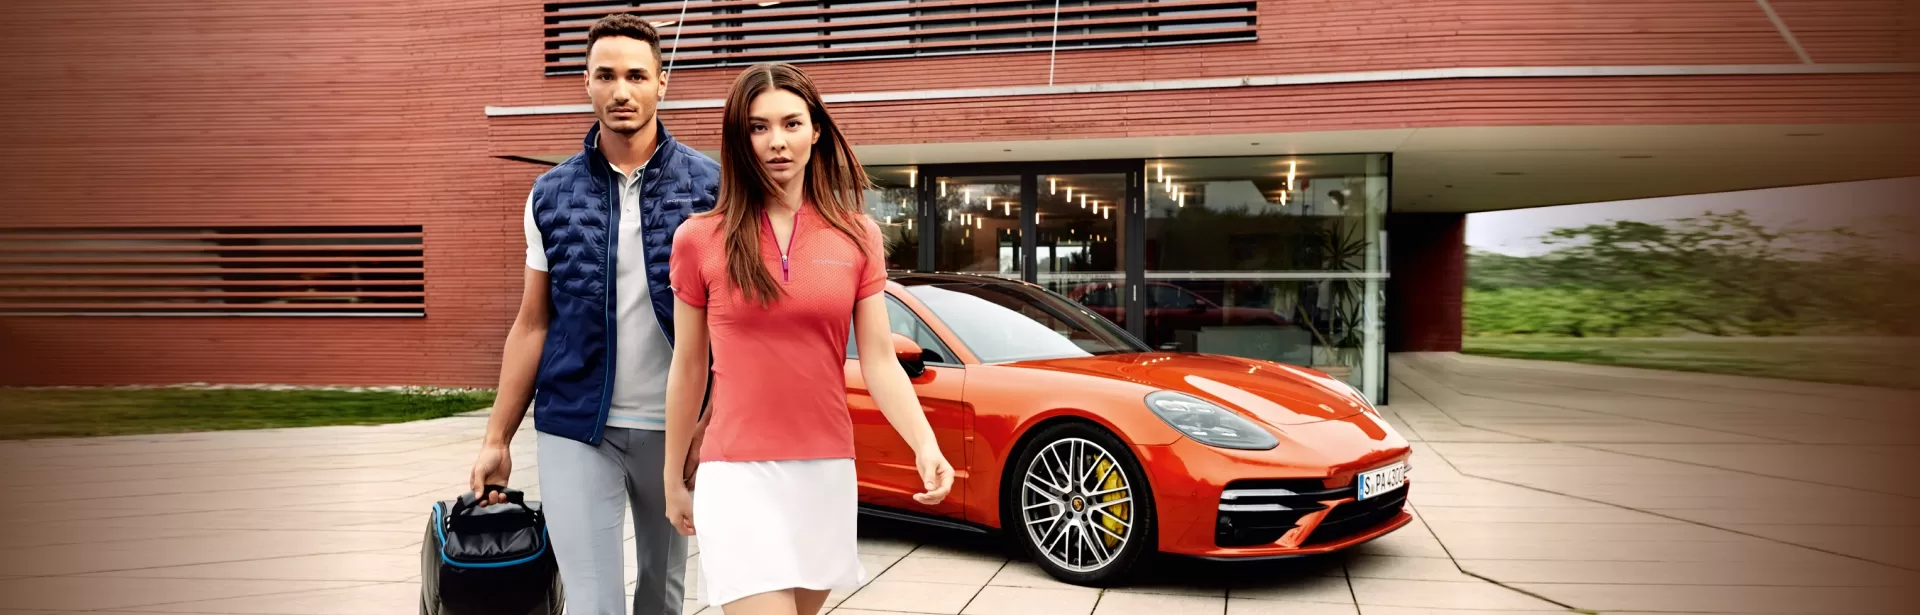 Специальное предложение на одежду и аксессуары Porsche Lifestyle. Летний Sale до 25%.